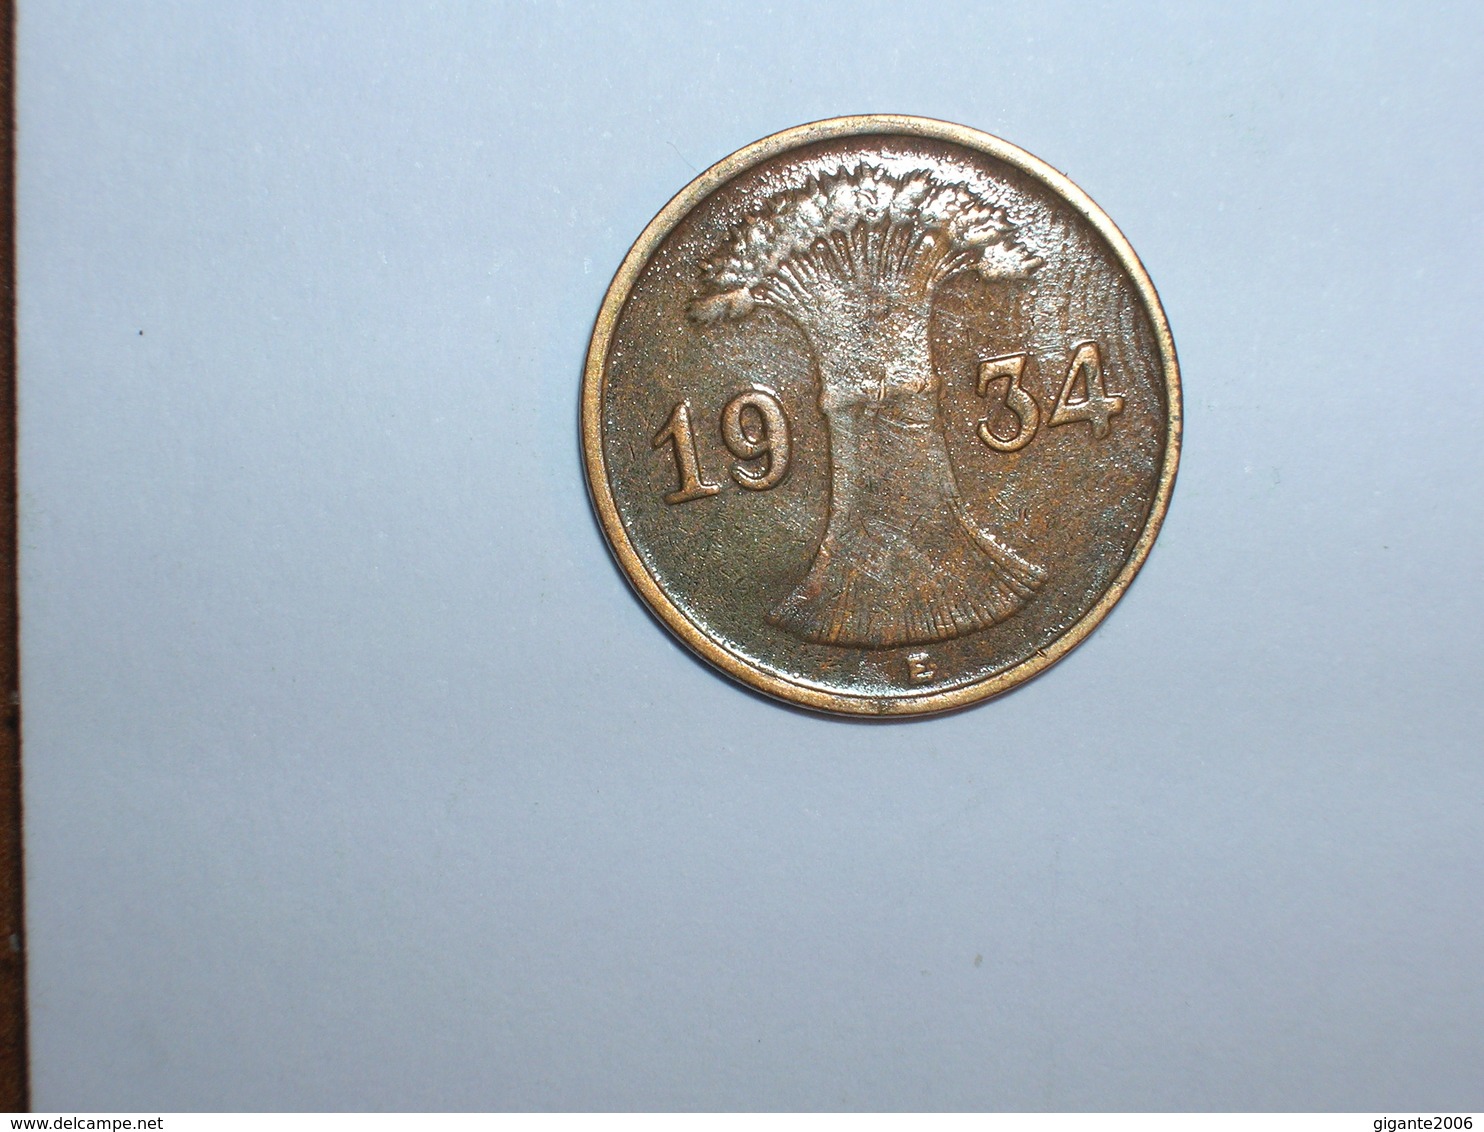 ALEMANIA 1 REICHPFENNIG 1934 E (1148) - 1 Reichspfennig